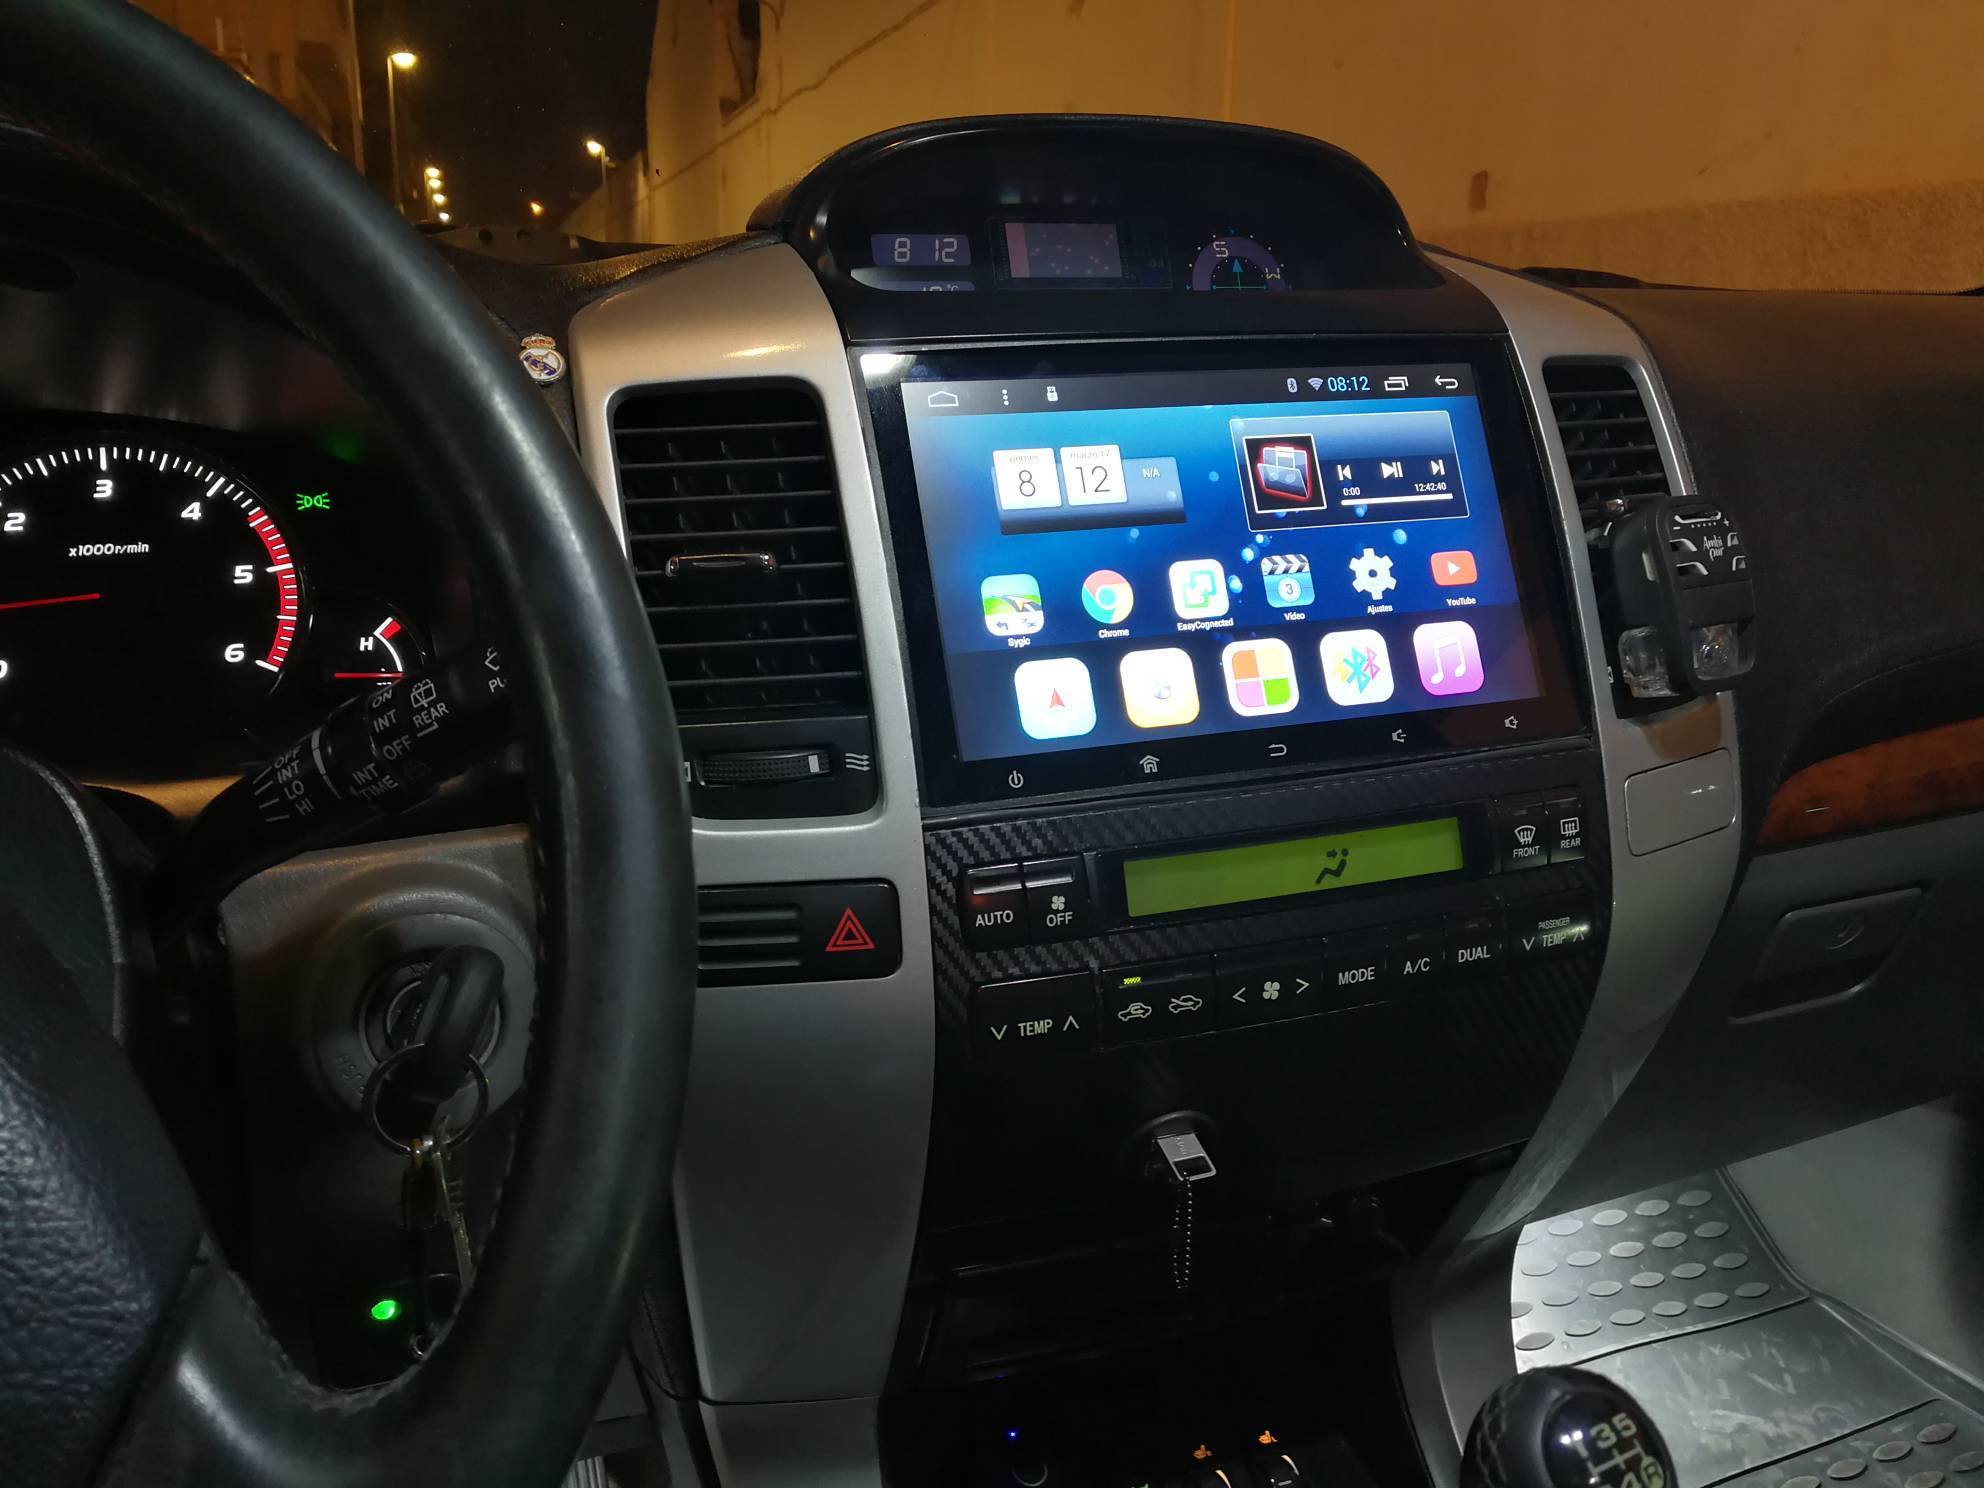 Instalación de sistemas Android para vehículos 4x4 en Melilla